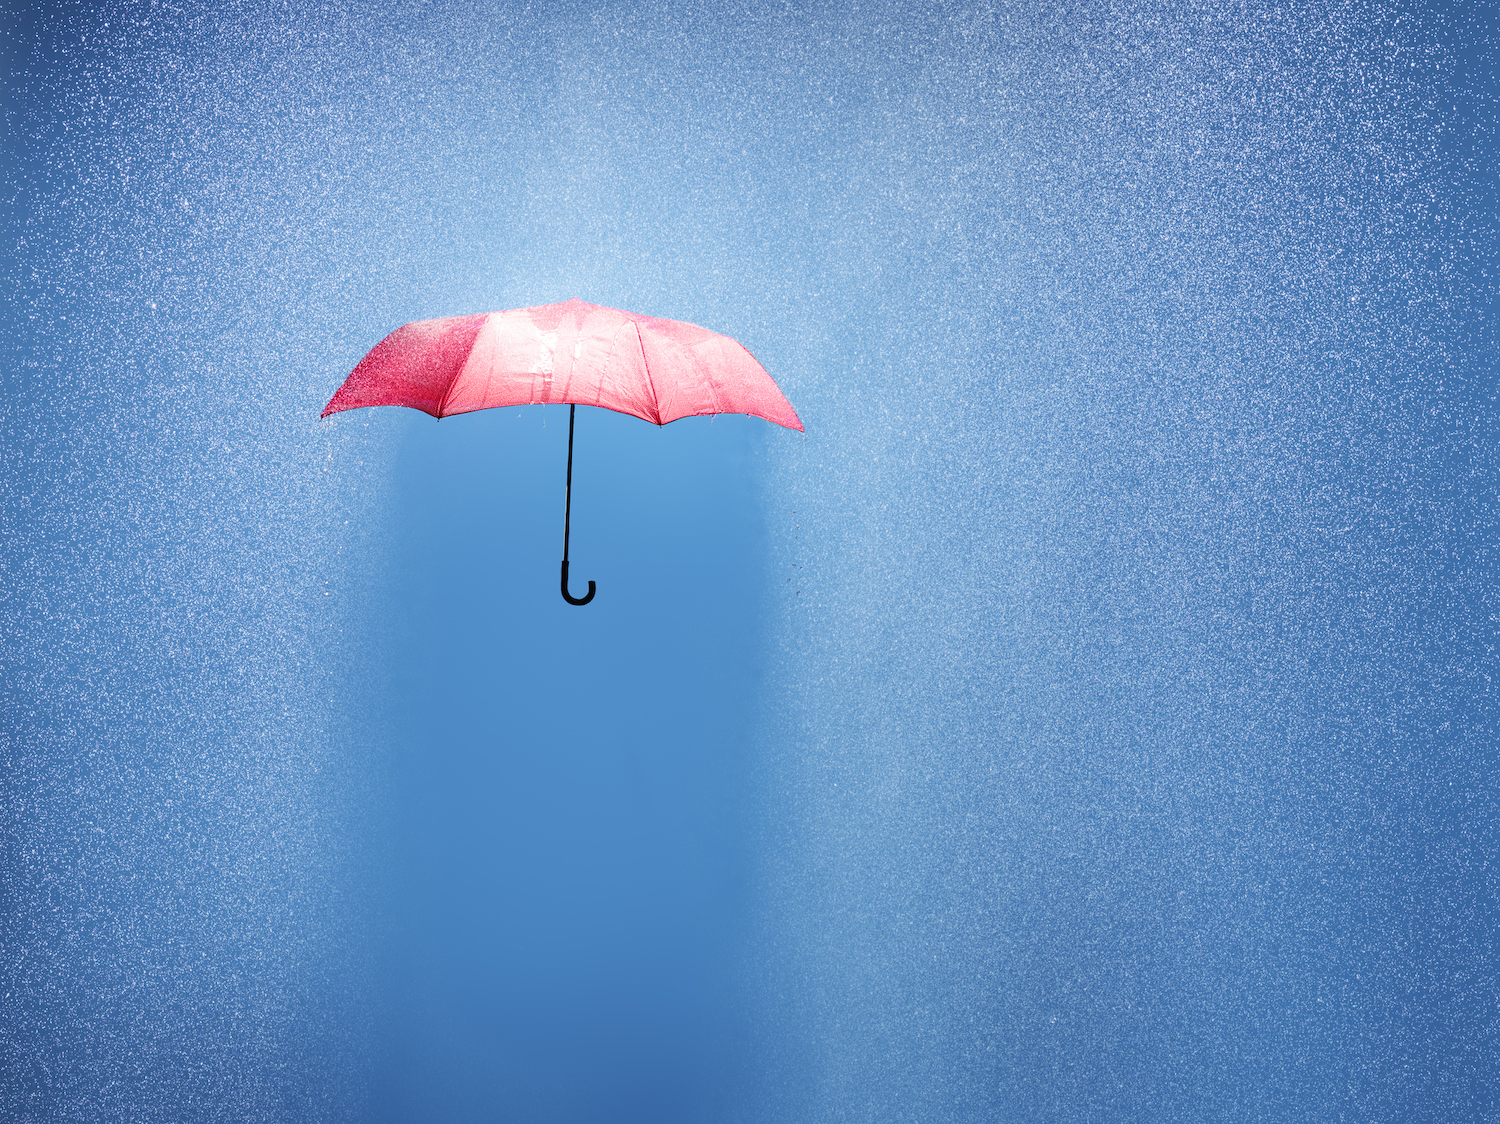 Paraguas rosa en una ducha de lluvia, fotografía conceptual